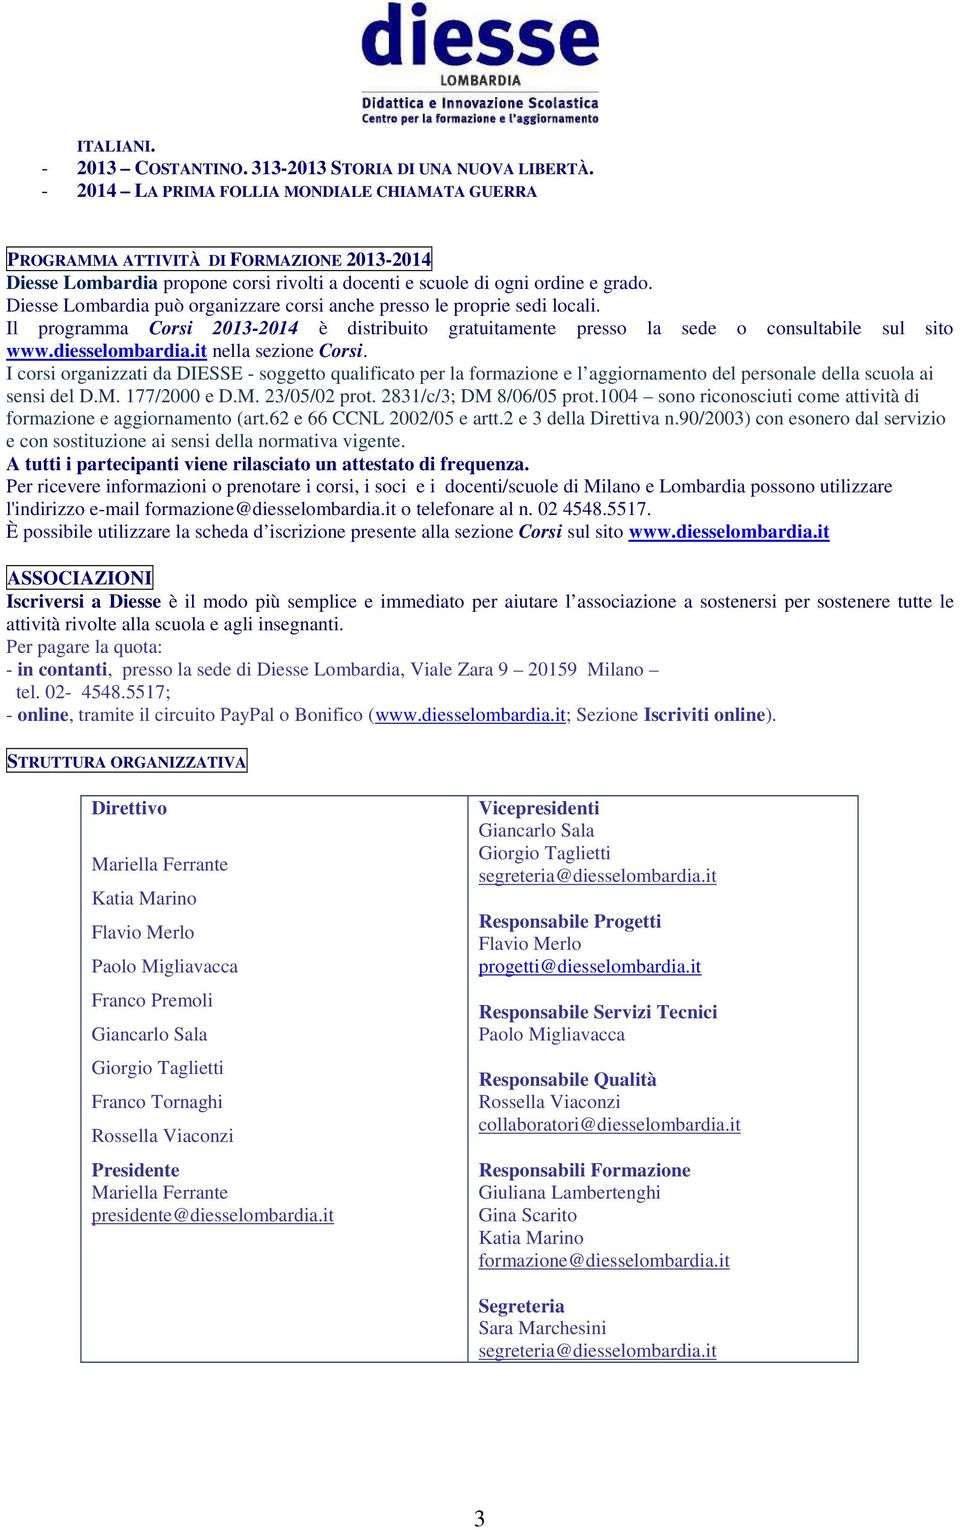 Diesse Lombardia può organizzare corsi anche presso le proprie sedi locali. Il programma Corsi 2013-2014 è distribuito gratuitamente presso la sede o consultabile sul sito www.diesselombardia.